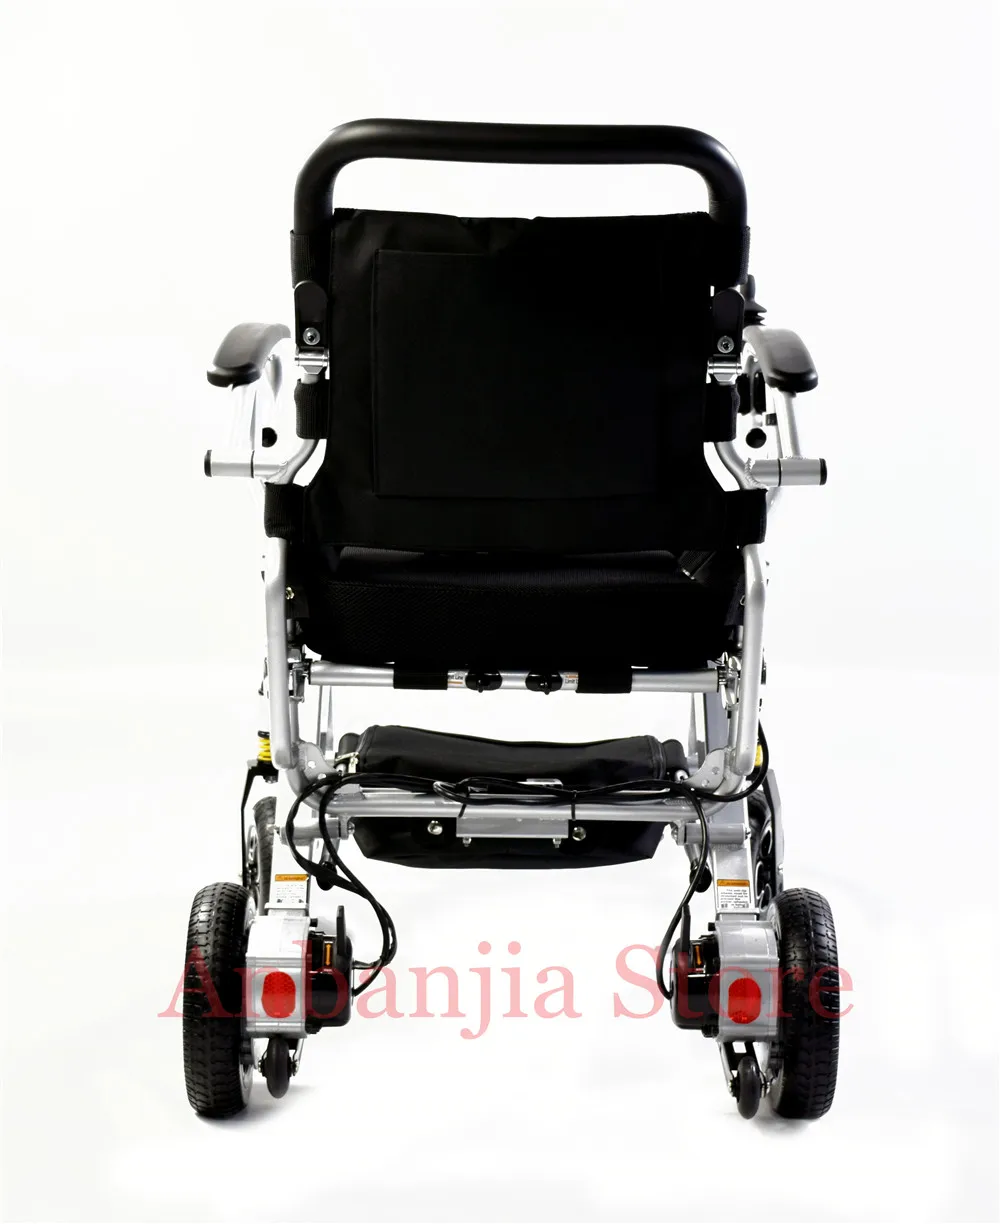 Дешевая цена нового поколения алюминиевая наружная мощность электрическая складывающаяся инвалидная коляска с литиевой батареей